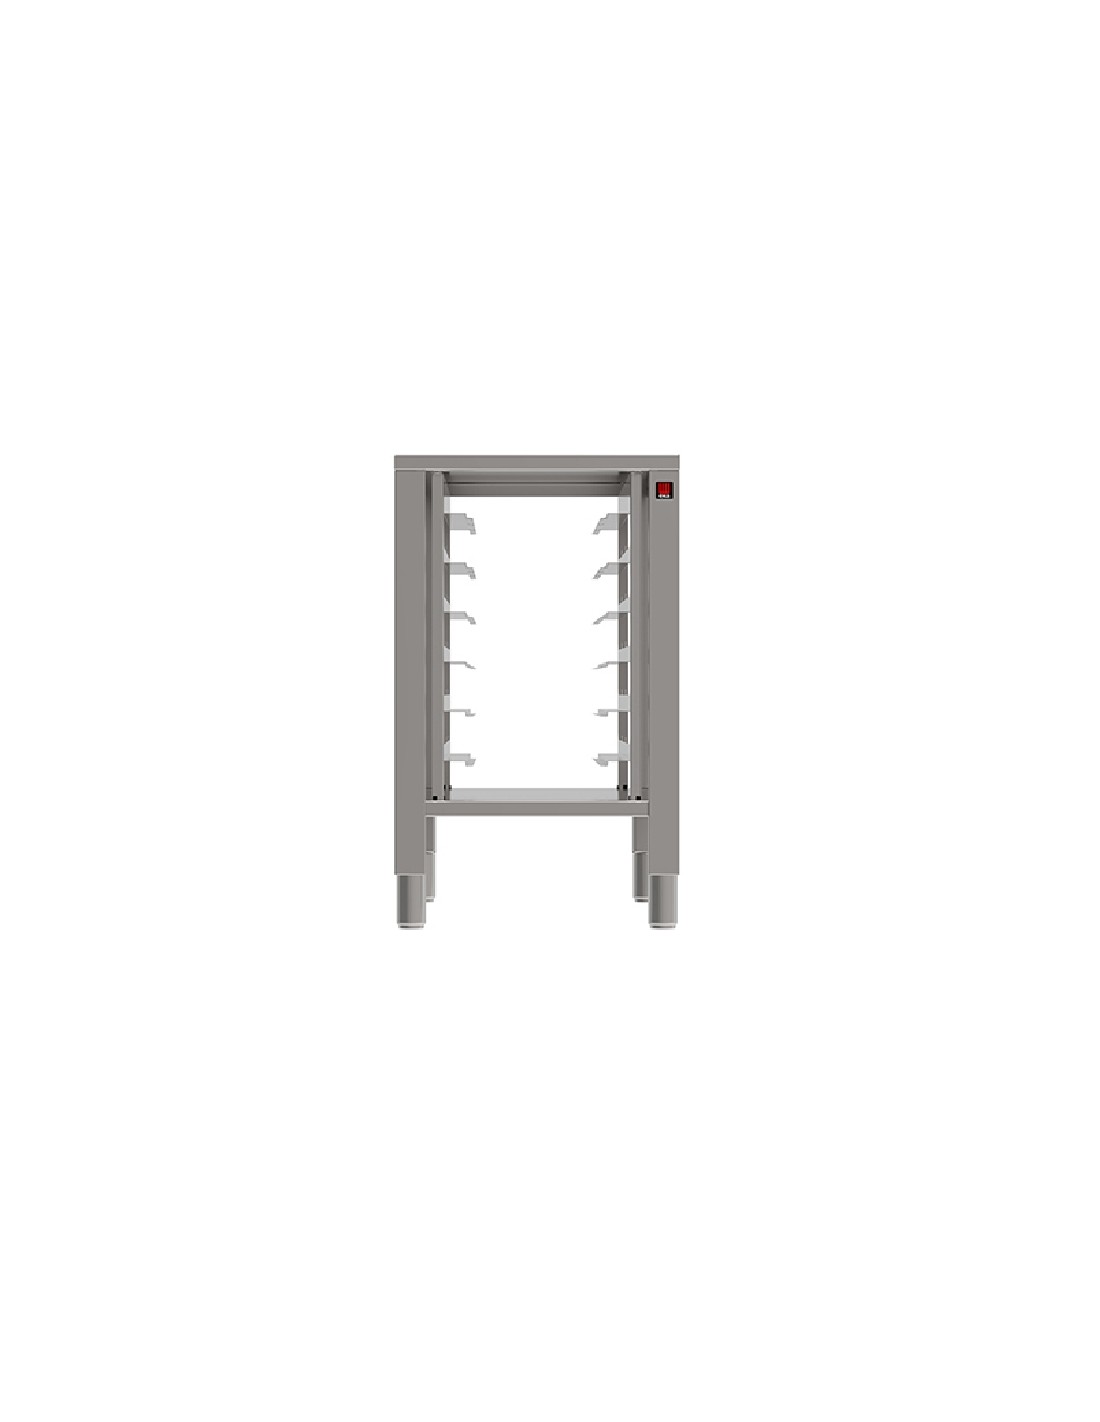 Mesa fija - Acciaio inox AISI 430 - Con soportes - Para hornos 6-10 placas compactas - Tamaño cm 50 x 73.6 x77h